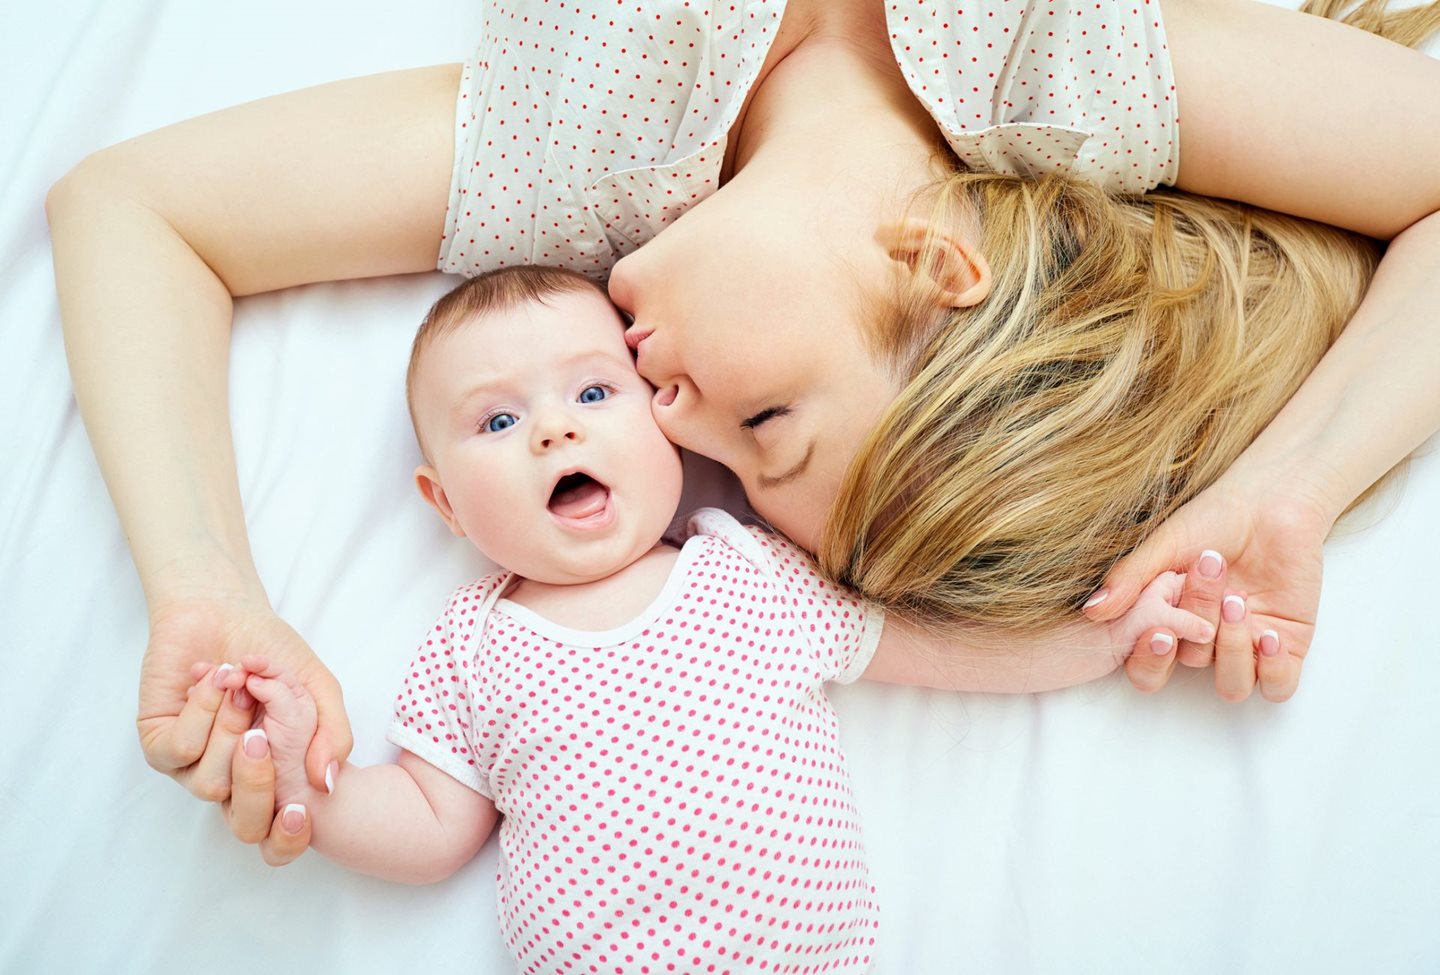 6 őszinte tanács újdonsült anyukáknak